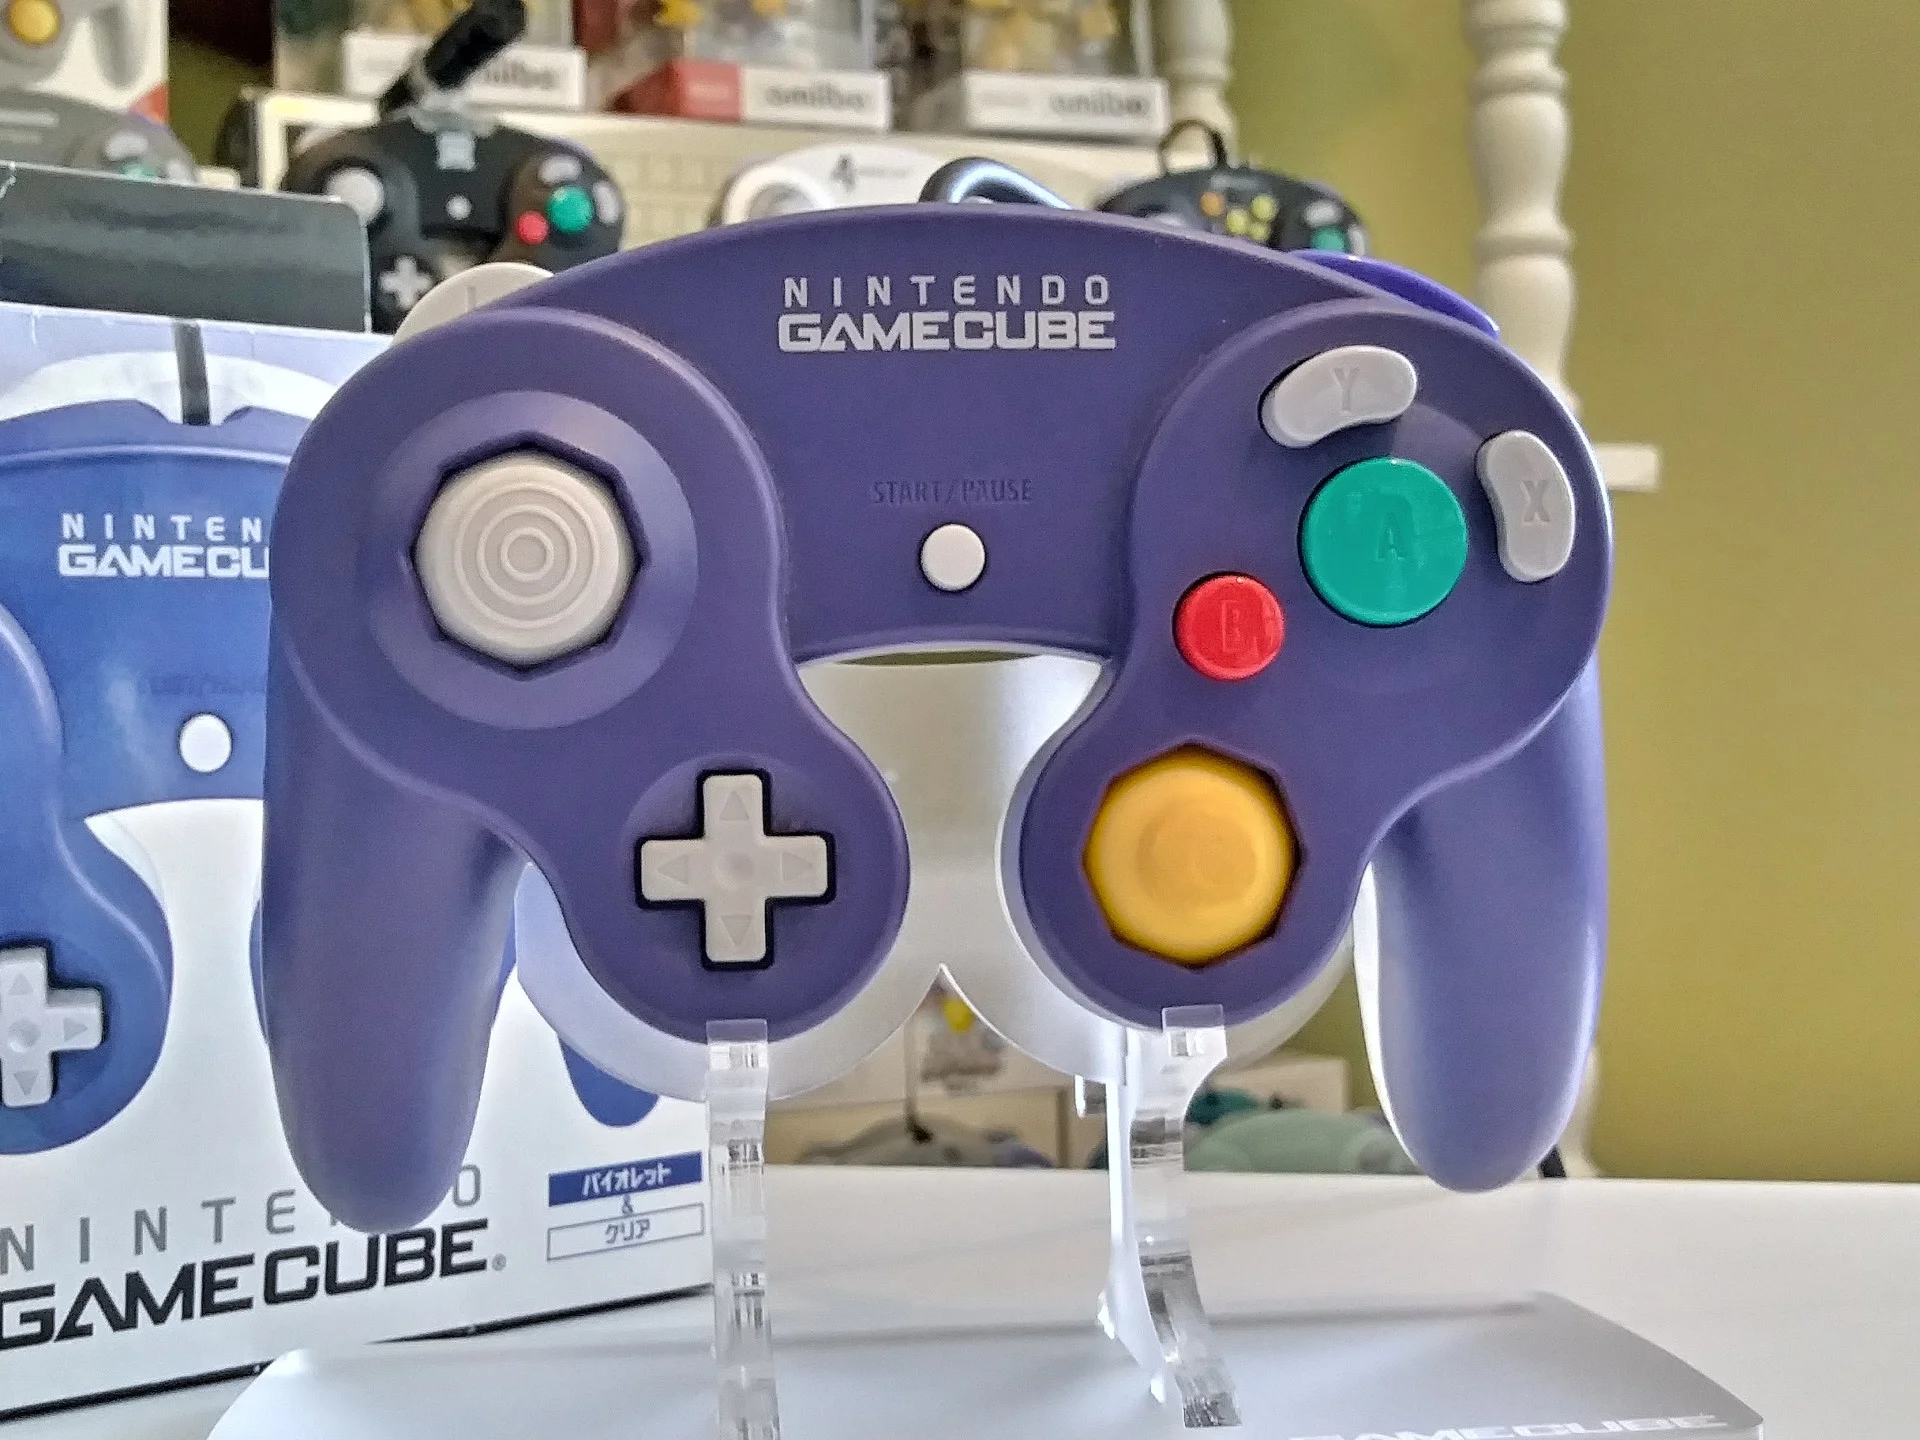  Nintendo GameCube Indigo / Clear Controller [EU]